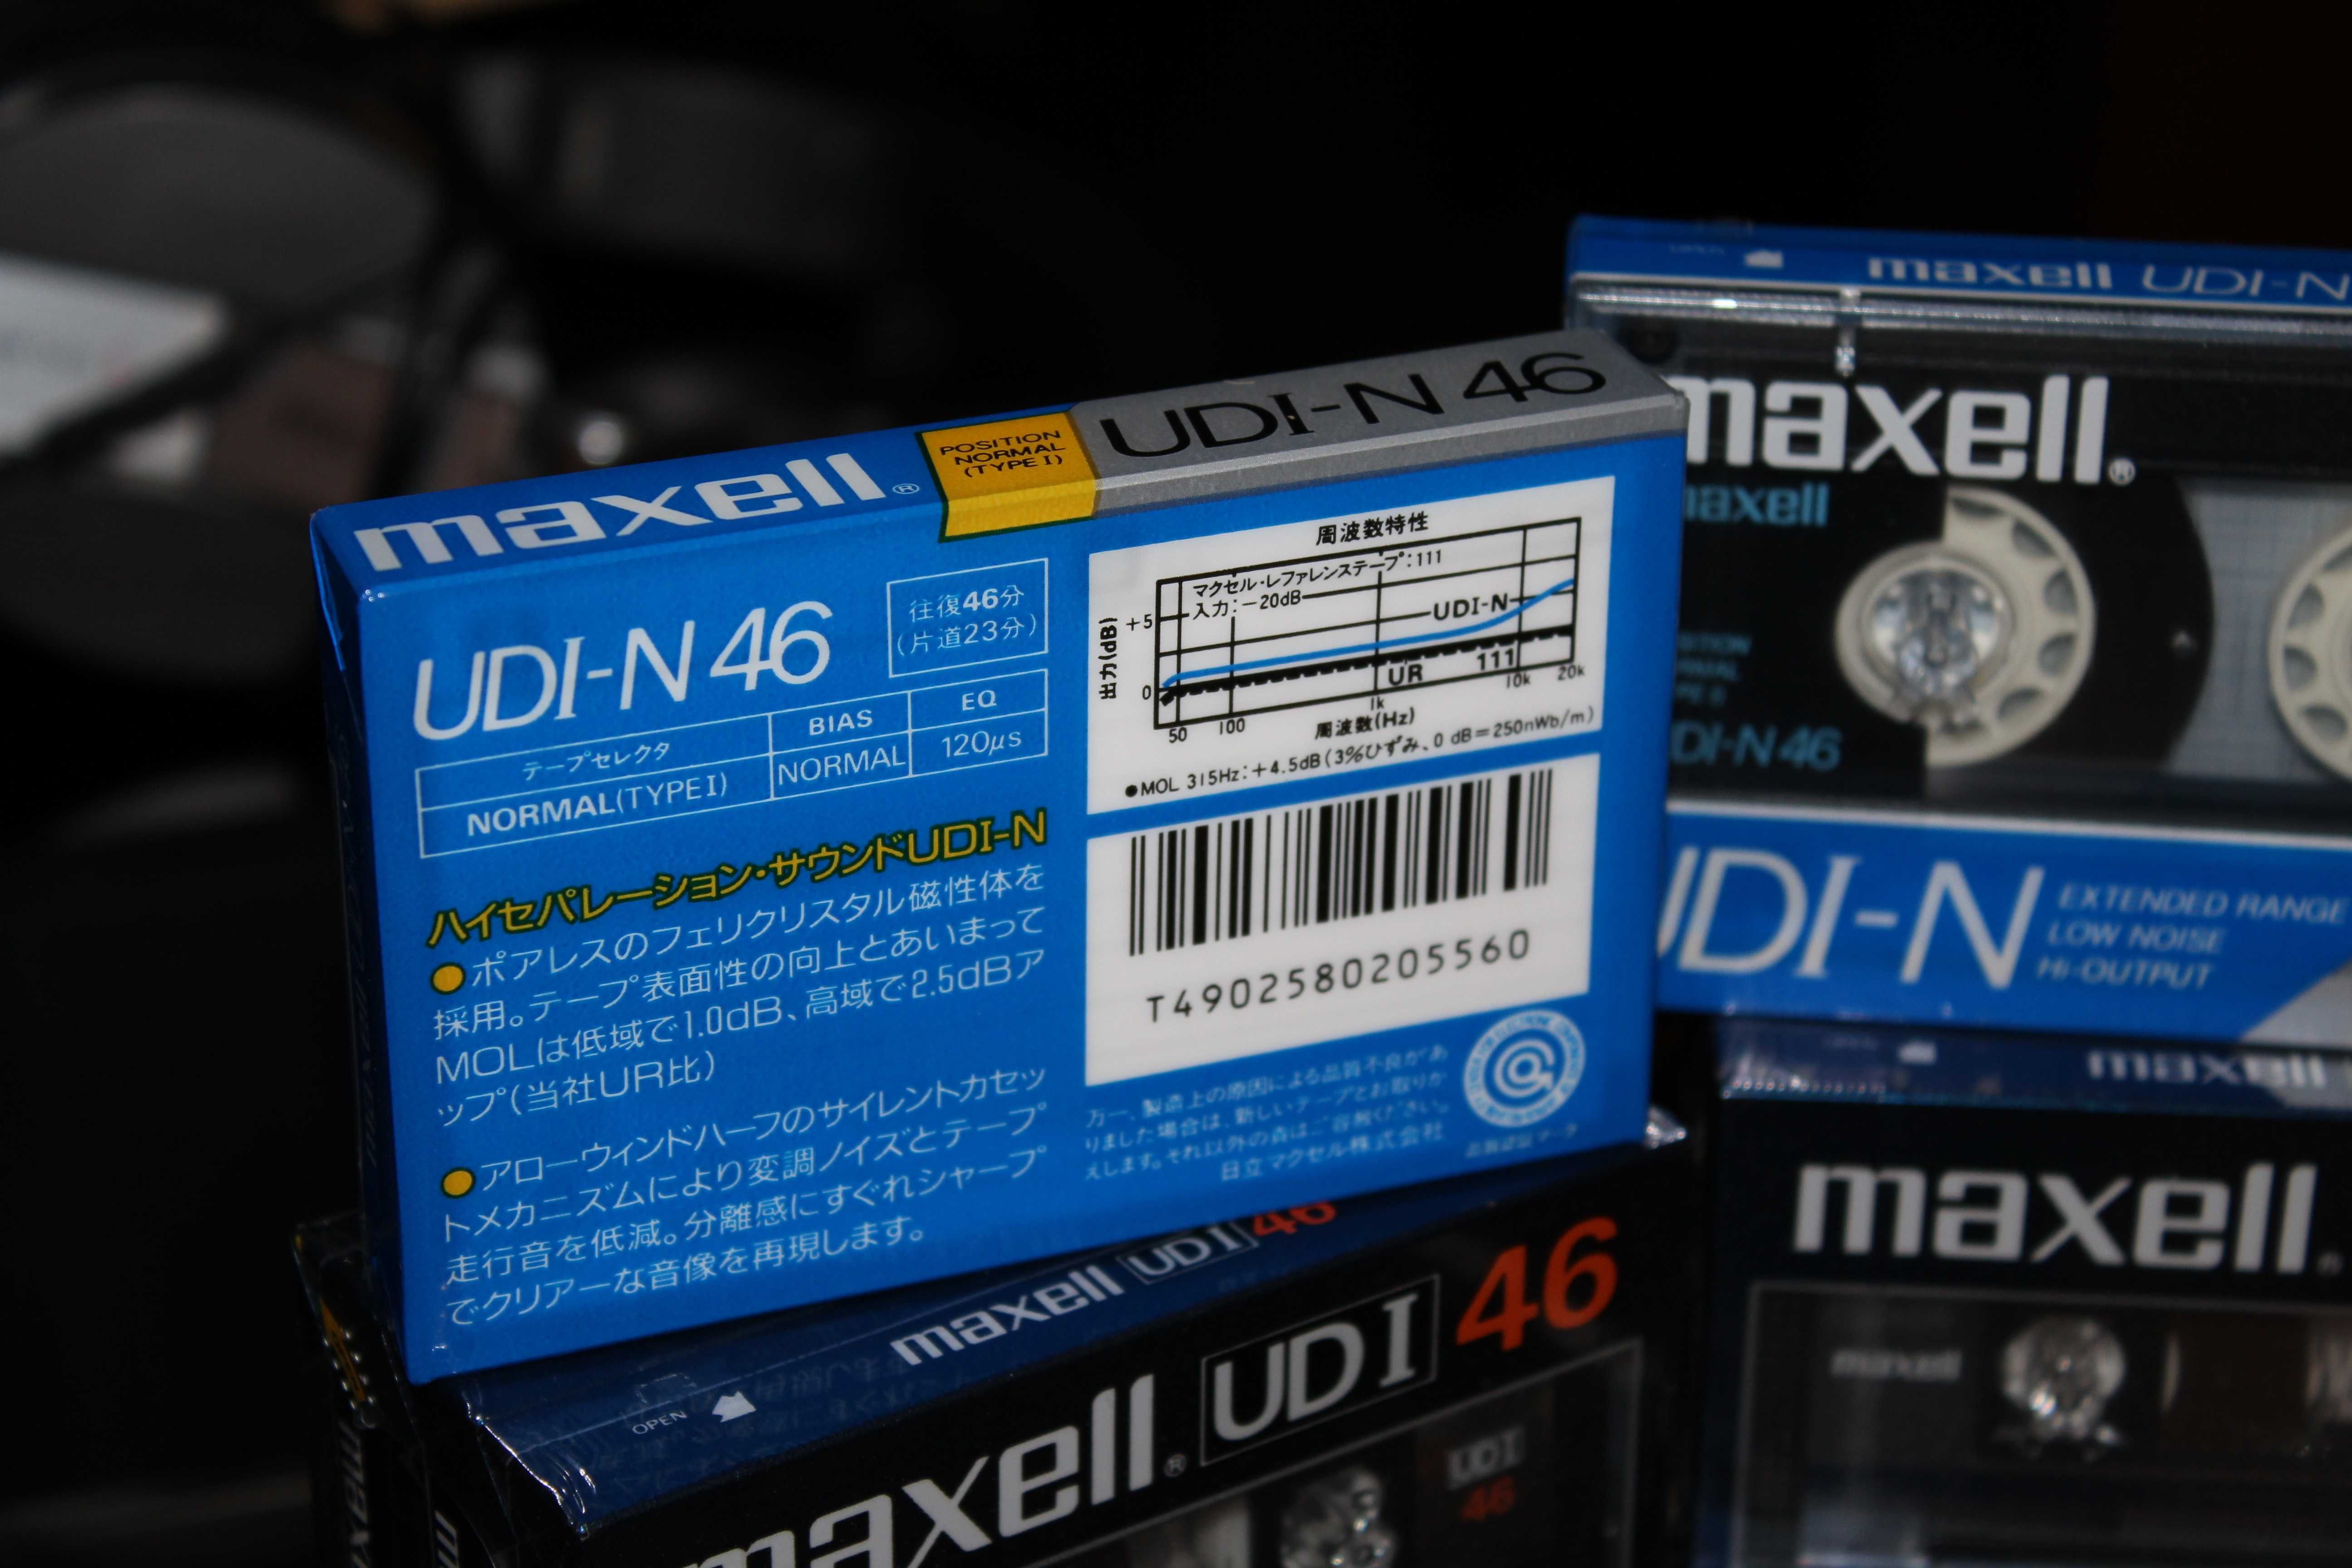 Редкие коллекционные аудиокассеты MAXELL UDI-N 46 Made in Japan Идеал!